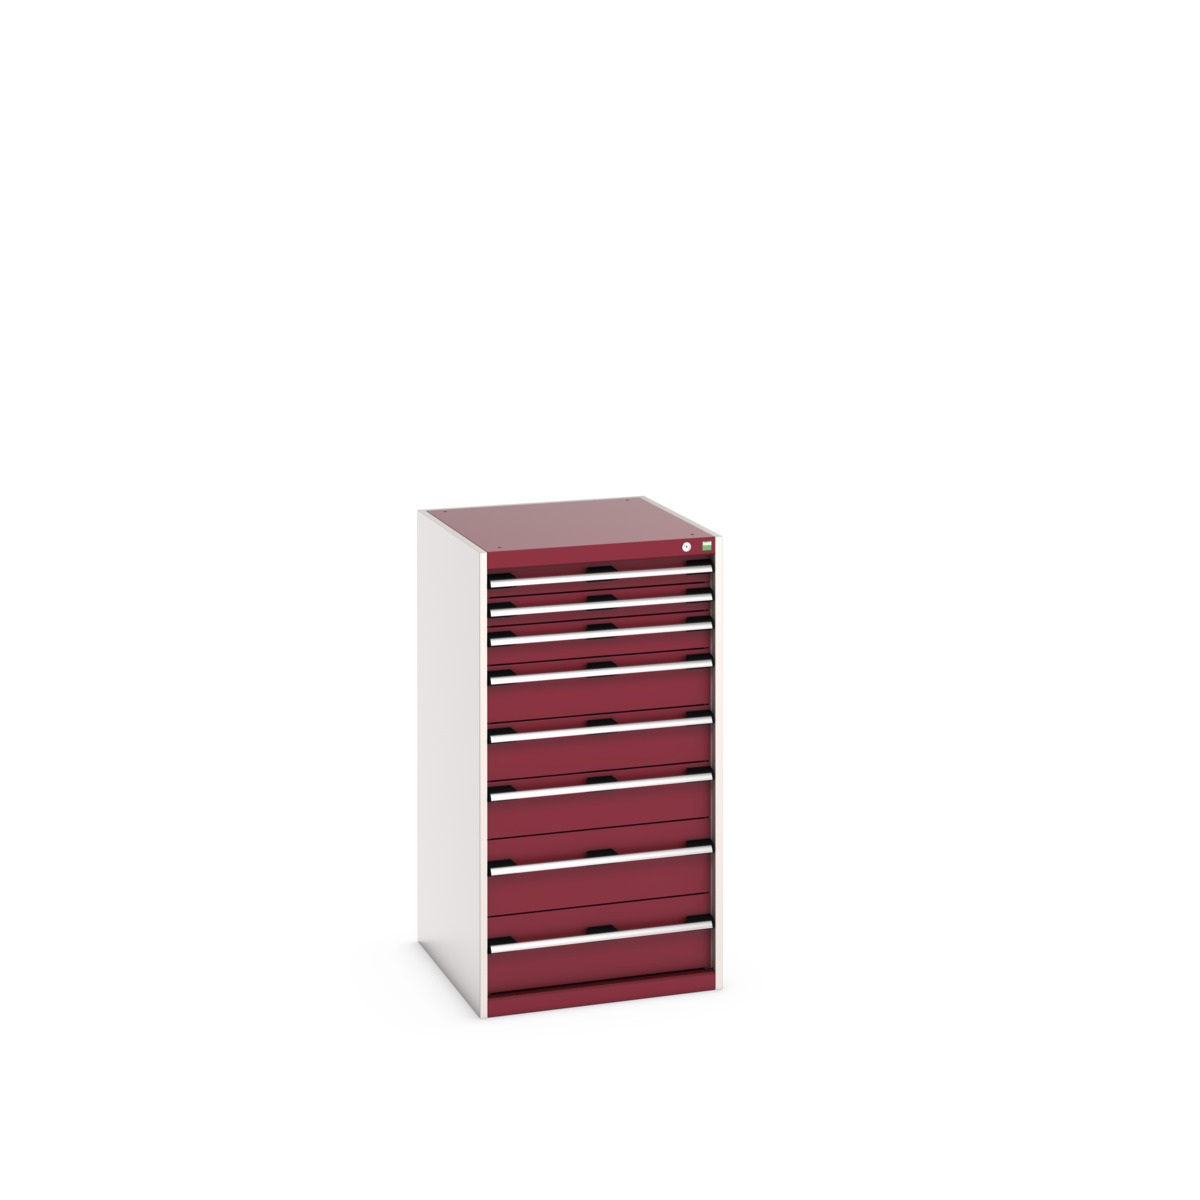 40027039.24V - cubio drawer cabinet